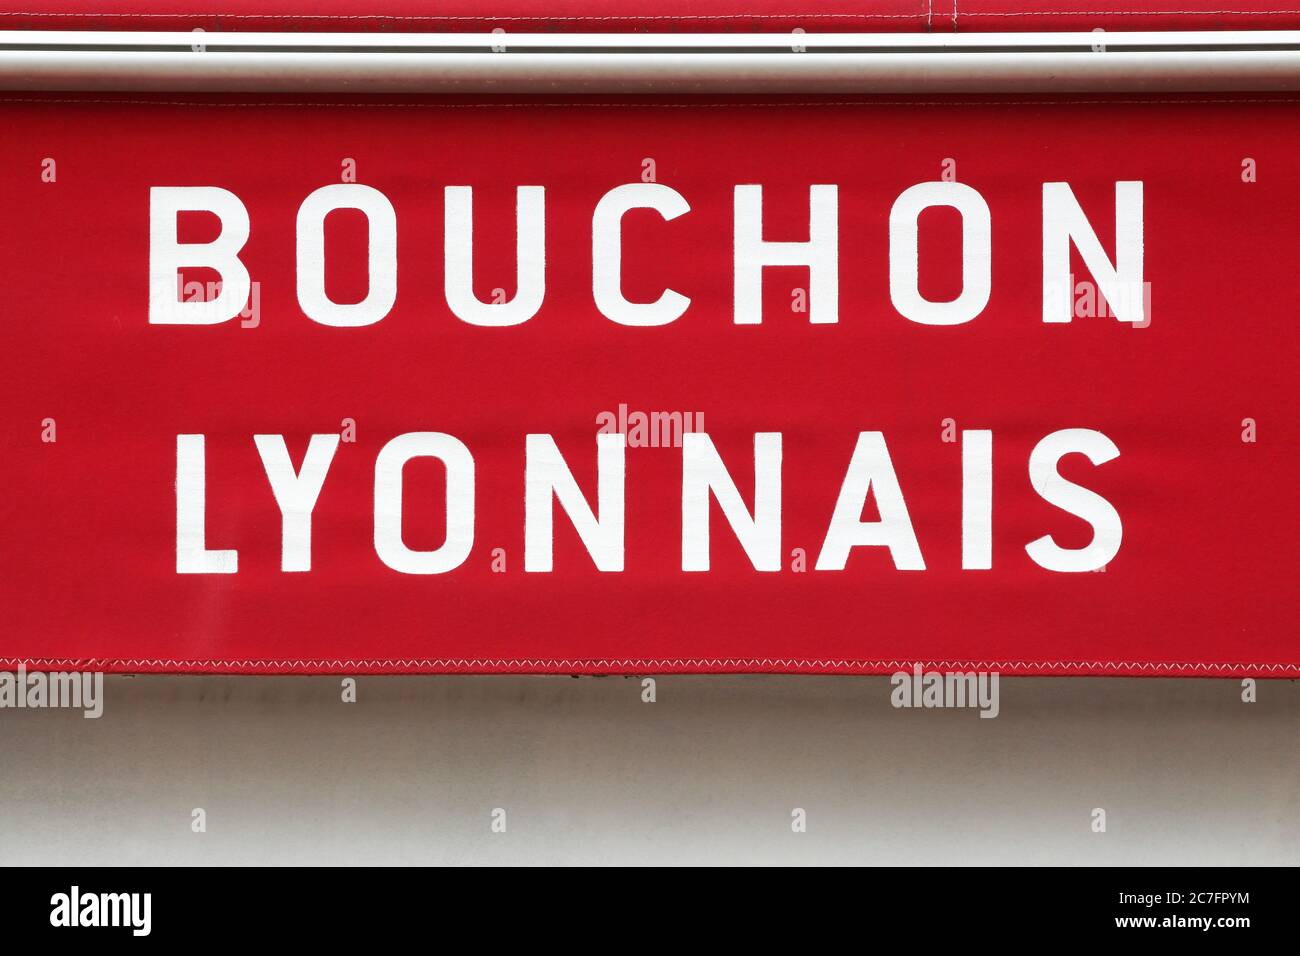 Bouchon Lyonnais restaurant sign on wall Stock Photo